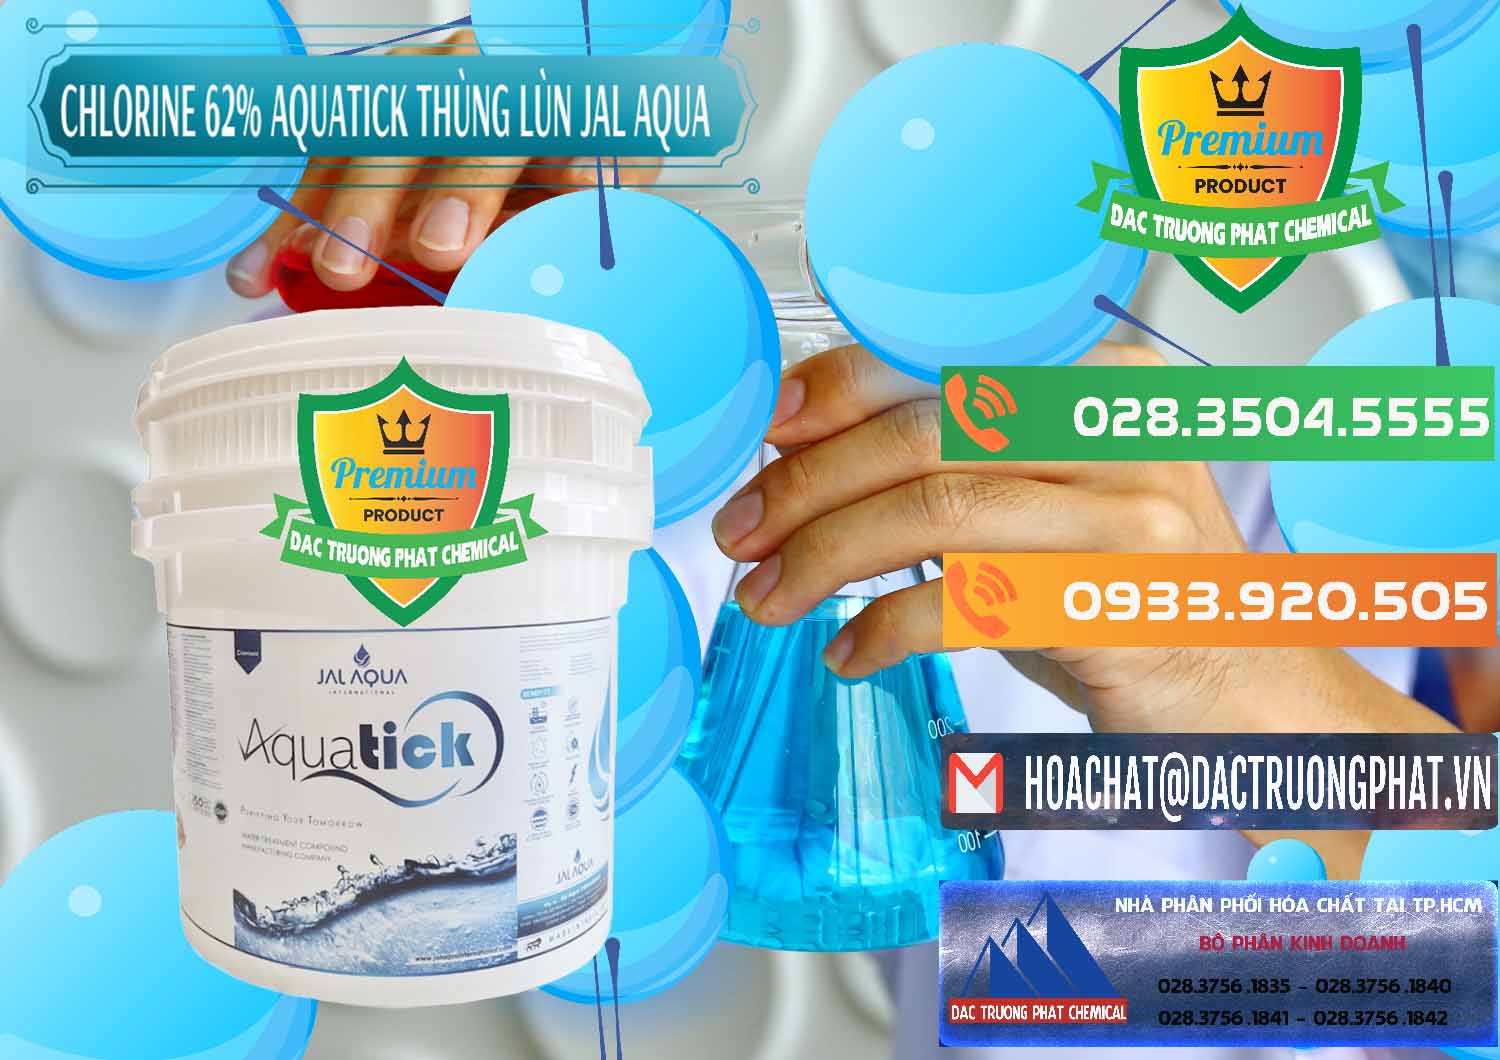 Nơi chuyên kinh doanh - bán Chlorine – Clorin 62% Aquatick Thùng Lùn Jal Aqua Ấn Độ India - 0238 - Bán & phân phối hóa chất tại TP.HCM - hoachatxulynuoc.com.vn